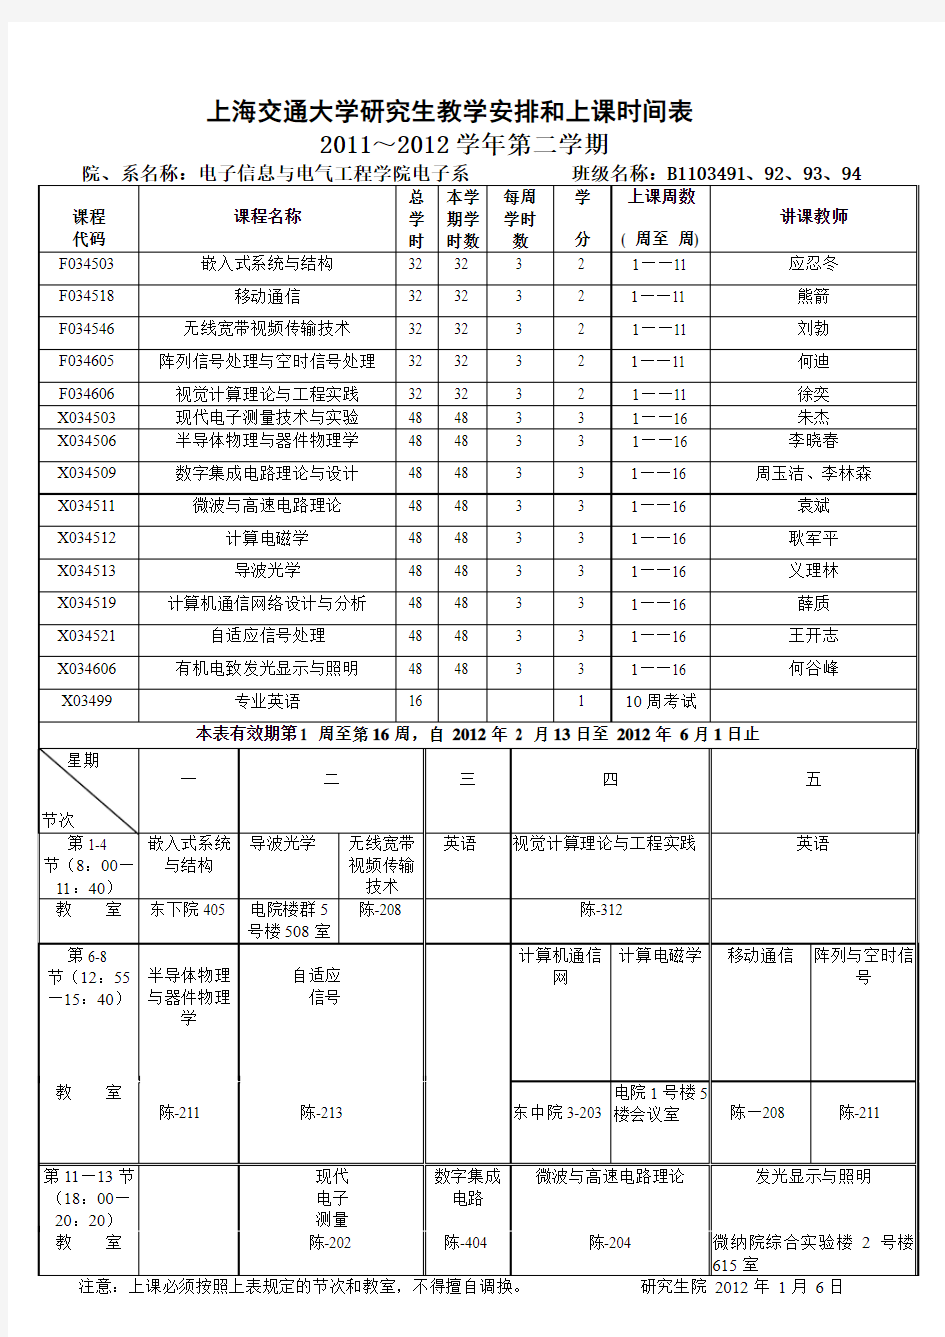 上海交通大学研究生教学安排和上课时间表